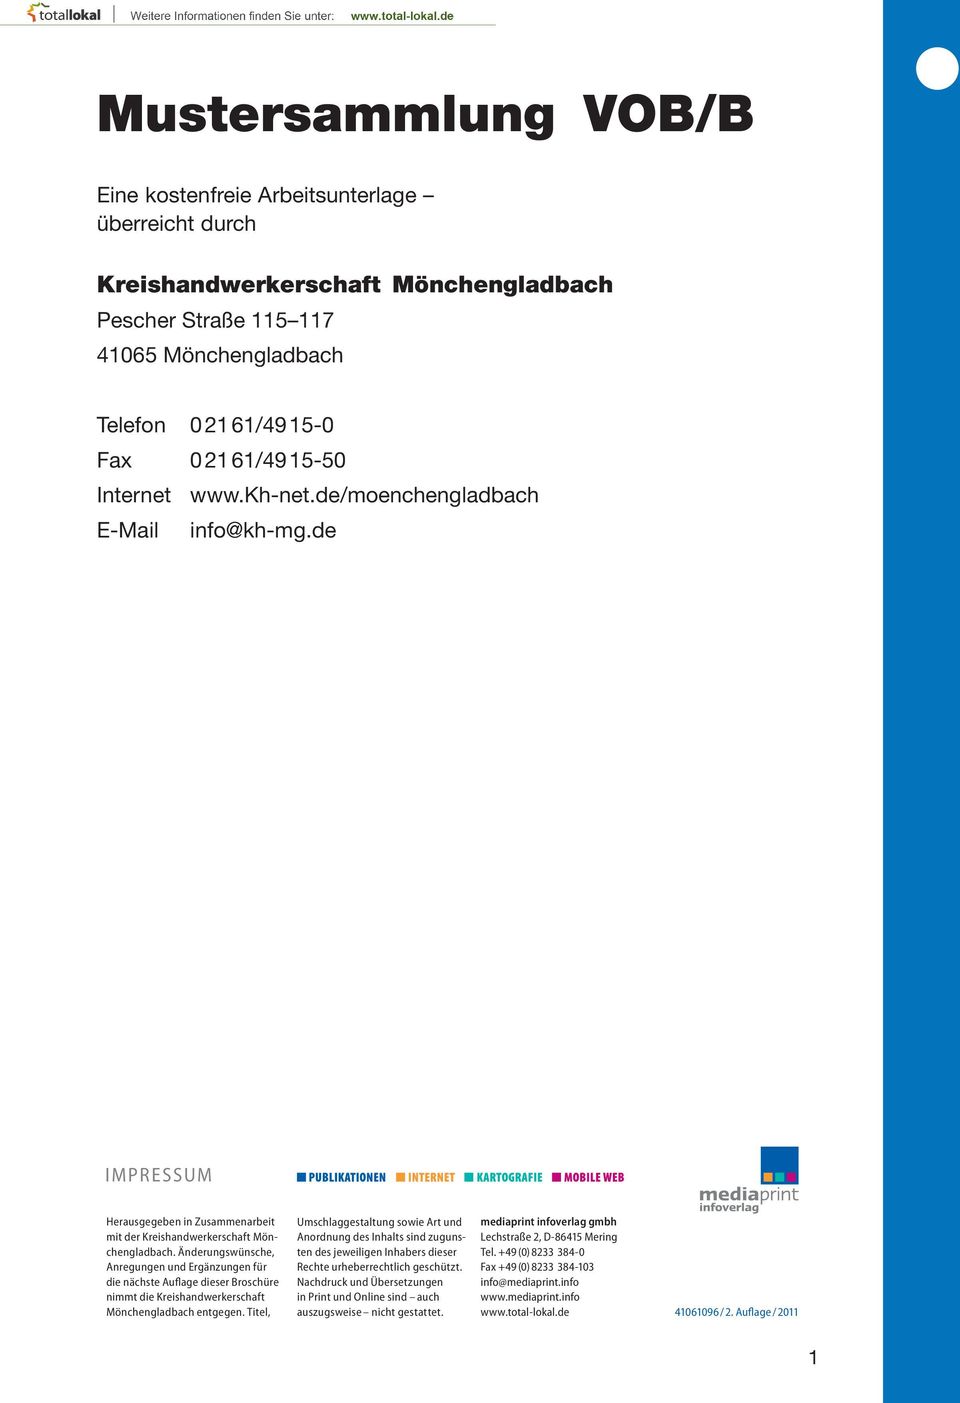 Änderungswünsche, Anregungen und Ergänzungen für die nächste Auflage dieser Broschüre nimmt die Kreishandwerkerschaft Mönchengladbach entgegen.